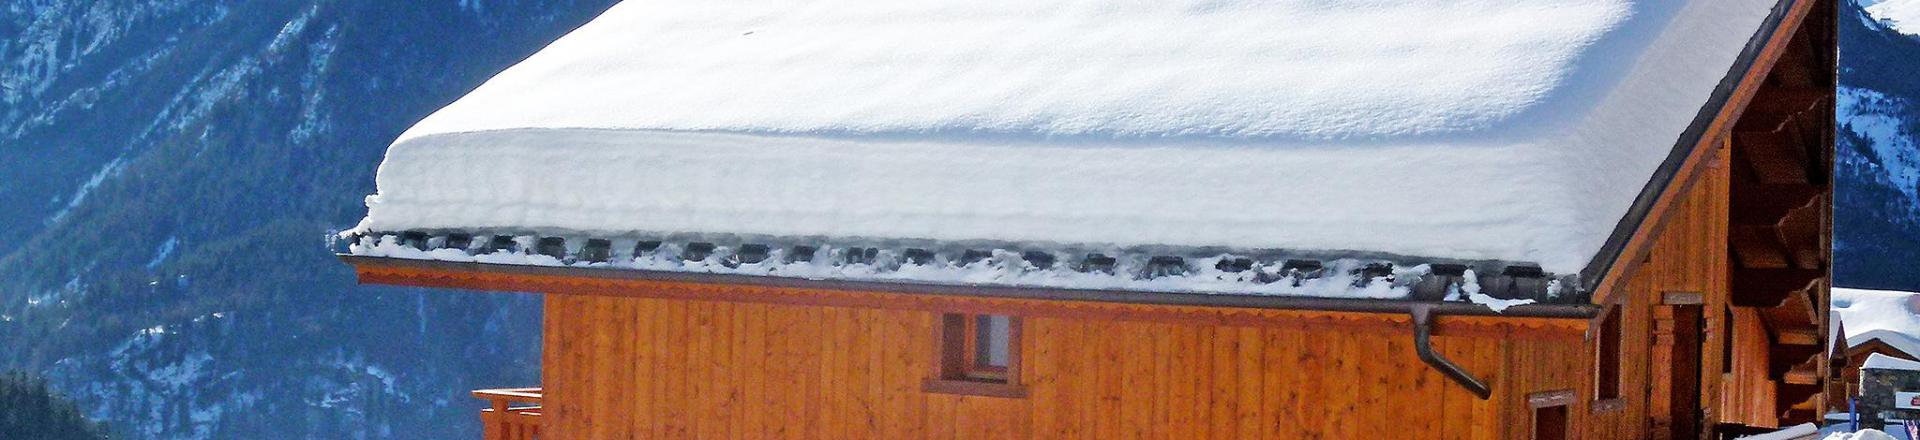 Location au ski Chalet Rosa Villosa - Champagny-en-Vanoise - Extérieur hiver